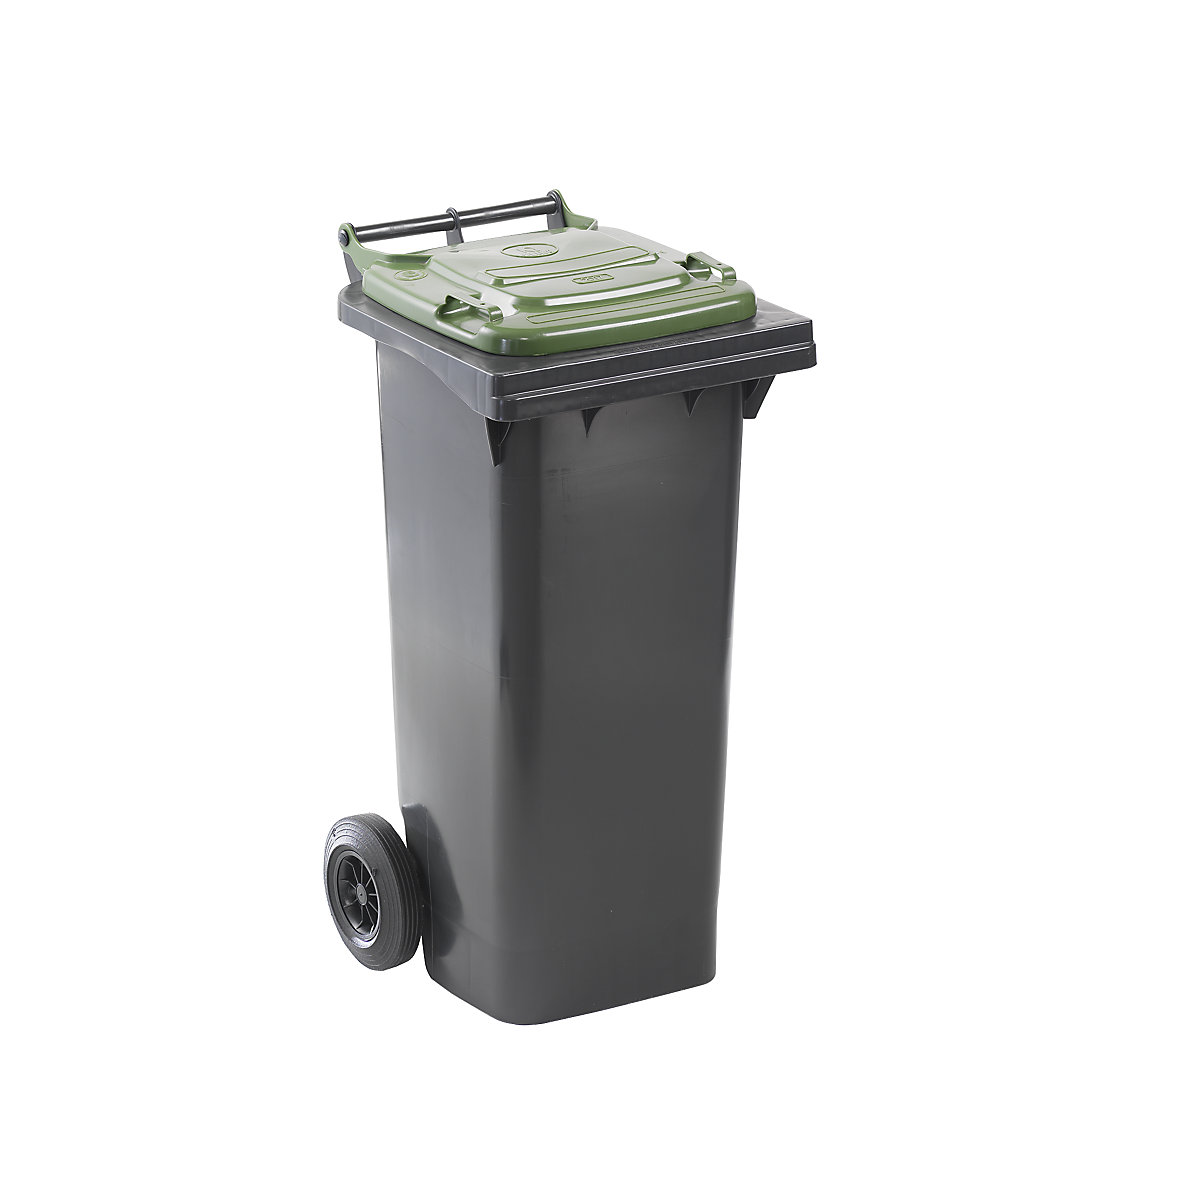 Nádoba na odpad podle ČSN EN 840, objem 80 l, š x v x h 448 x 975 x 530 mm, antracitová, víko zelené-7